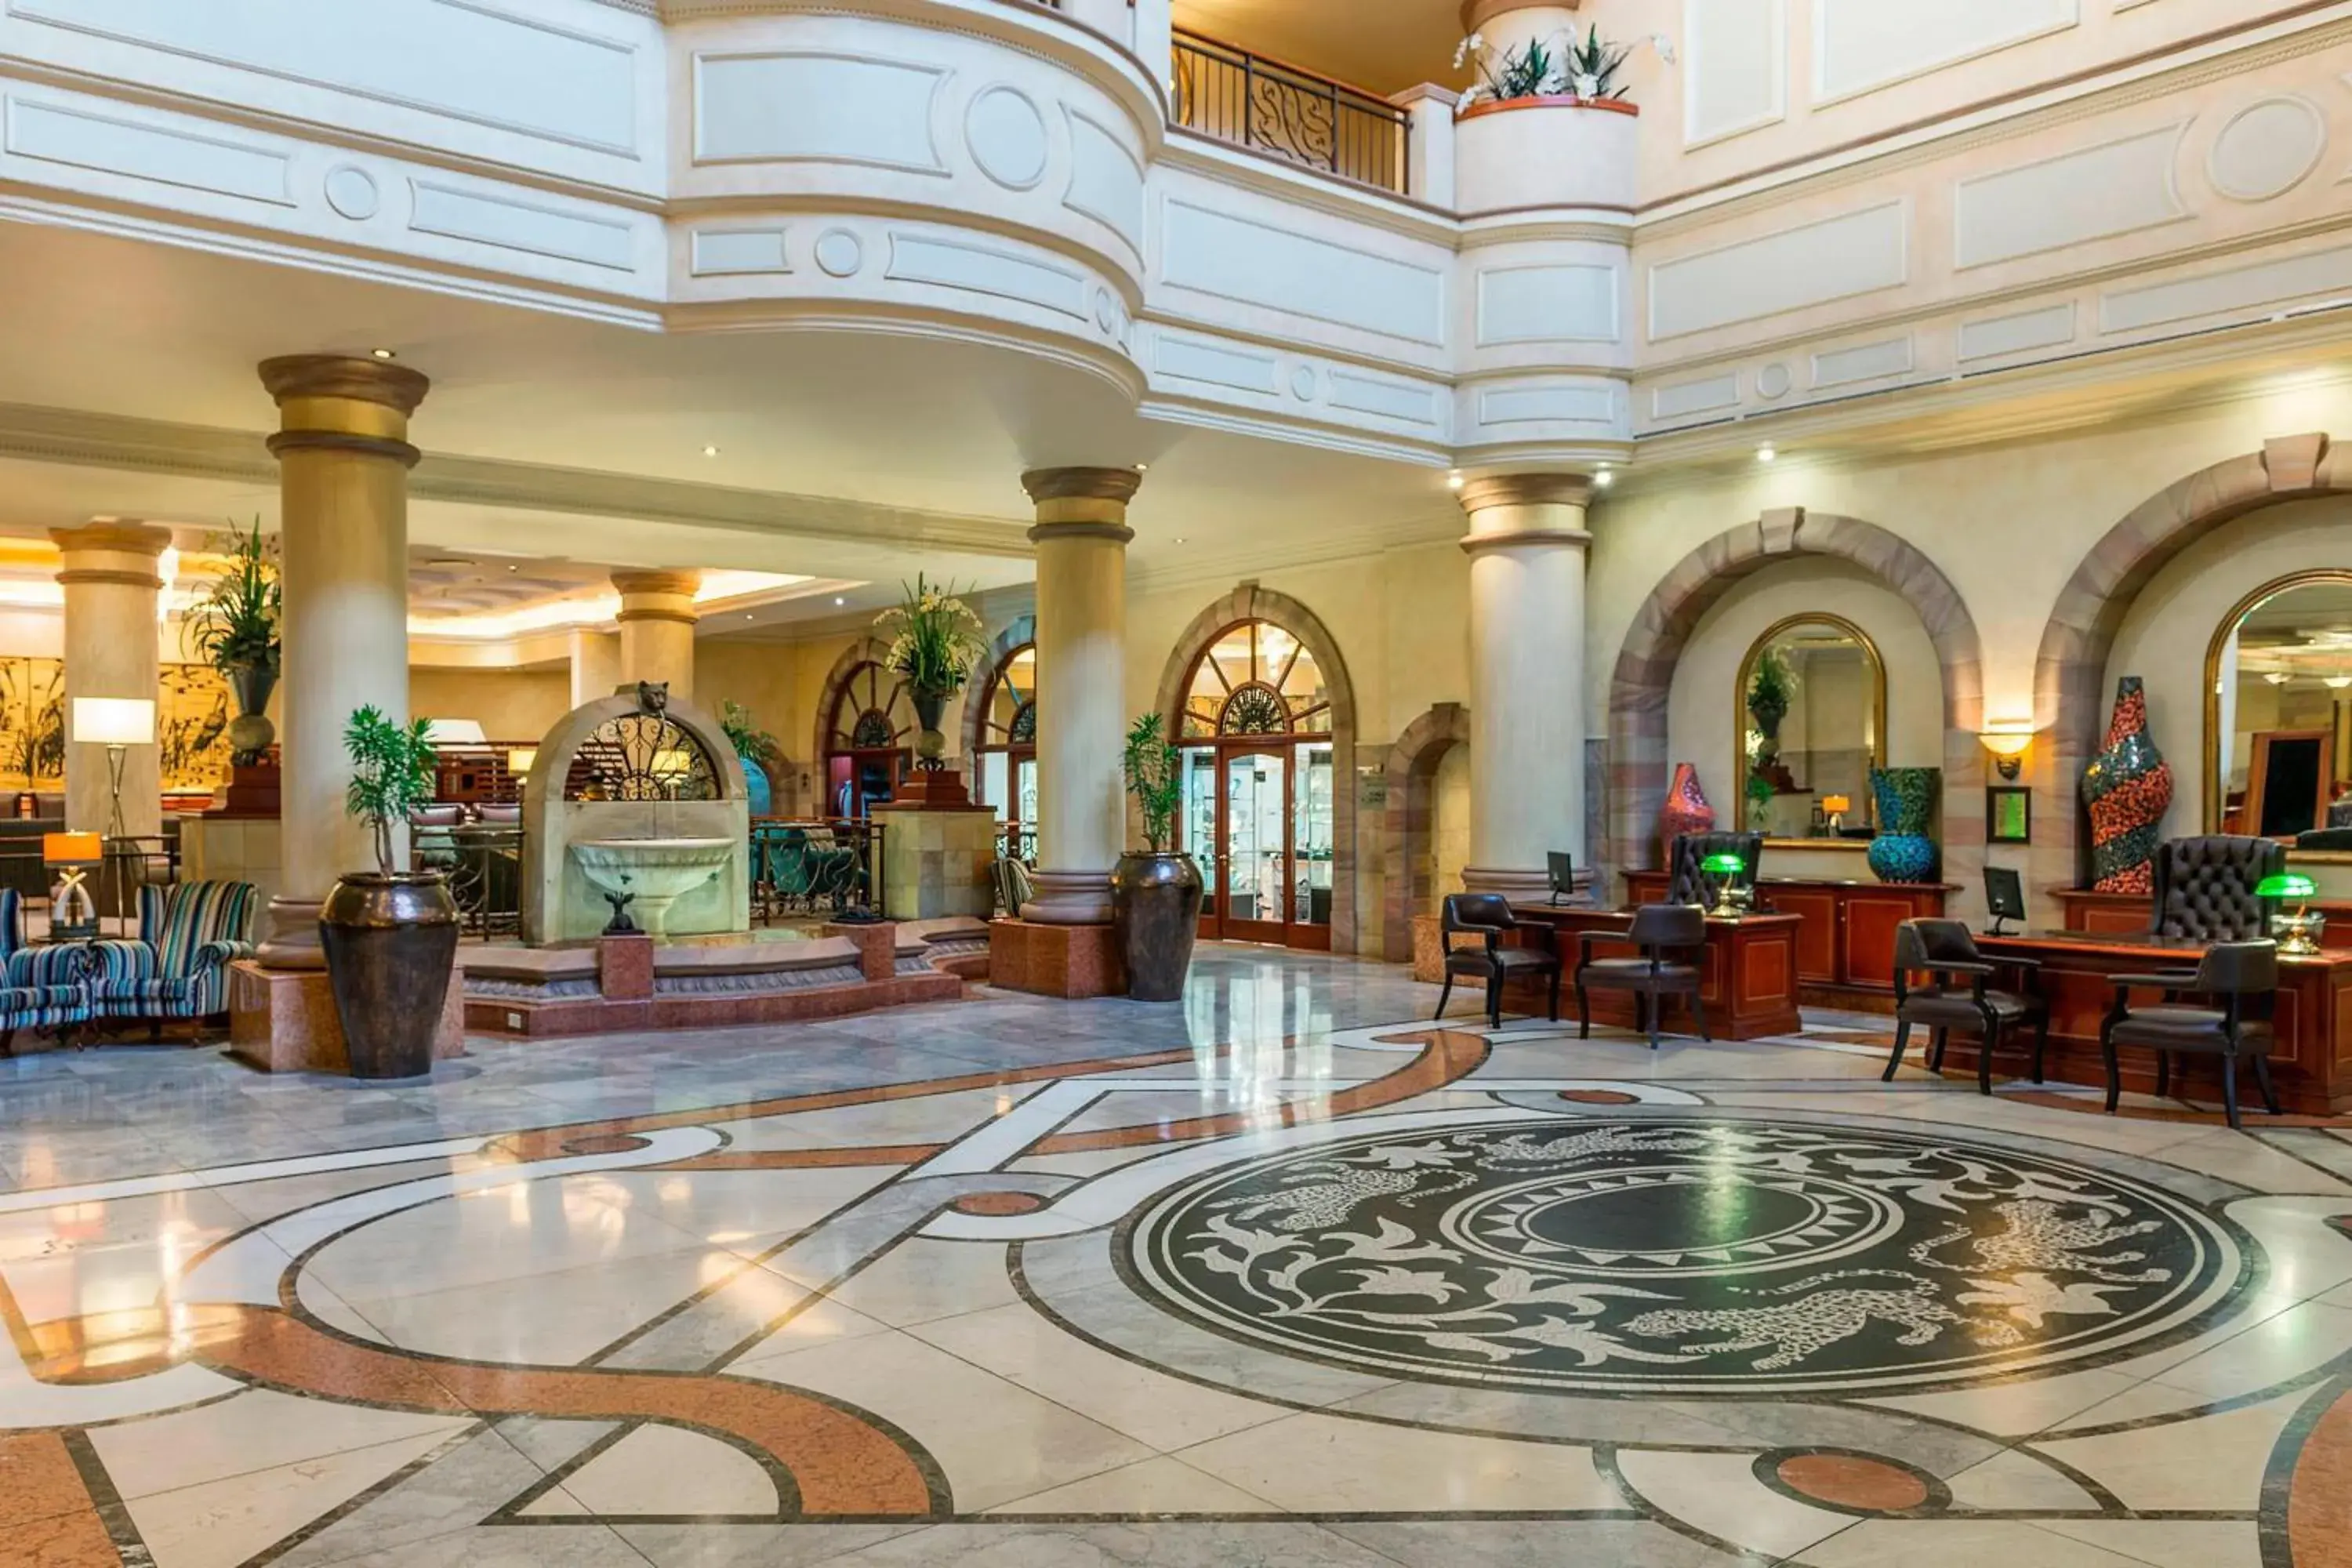 Lobby or reception in Sheraton Pretoria Hotel